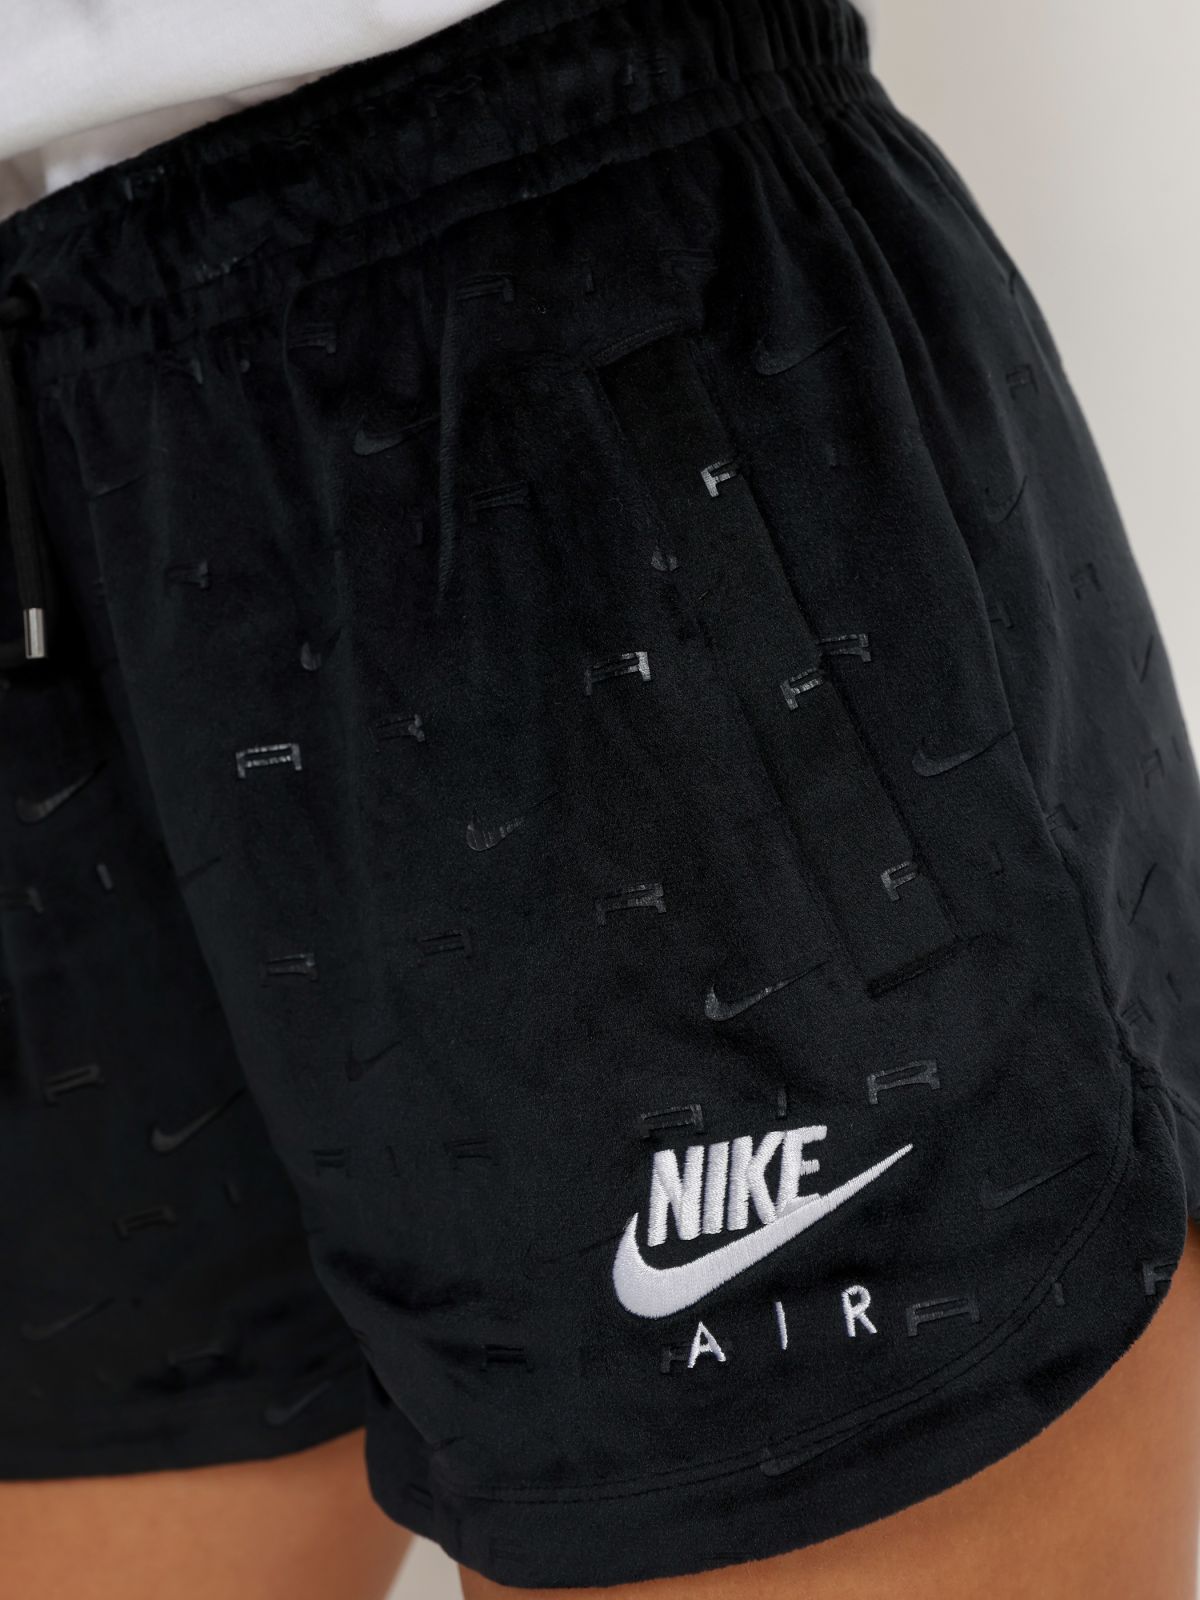  מכנסי קטיפה קצרים בהדפס לוגו  Nike Air של NIKE